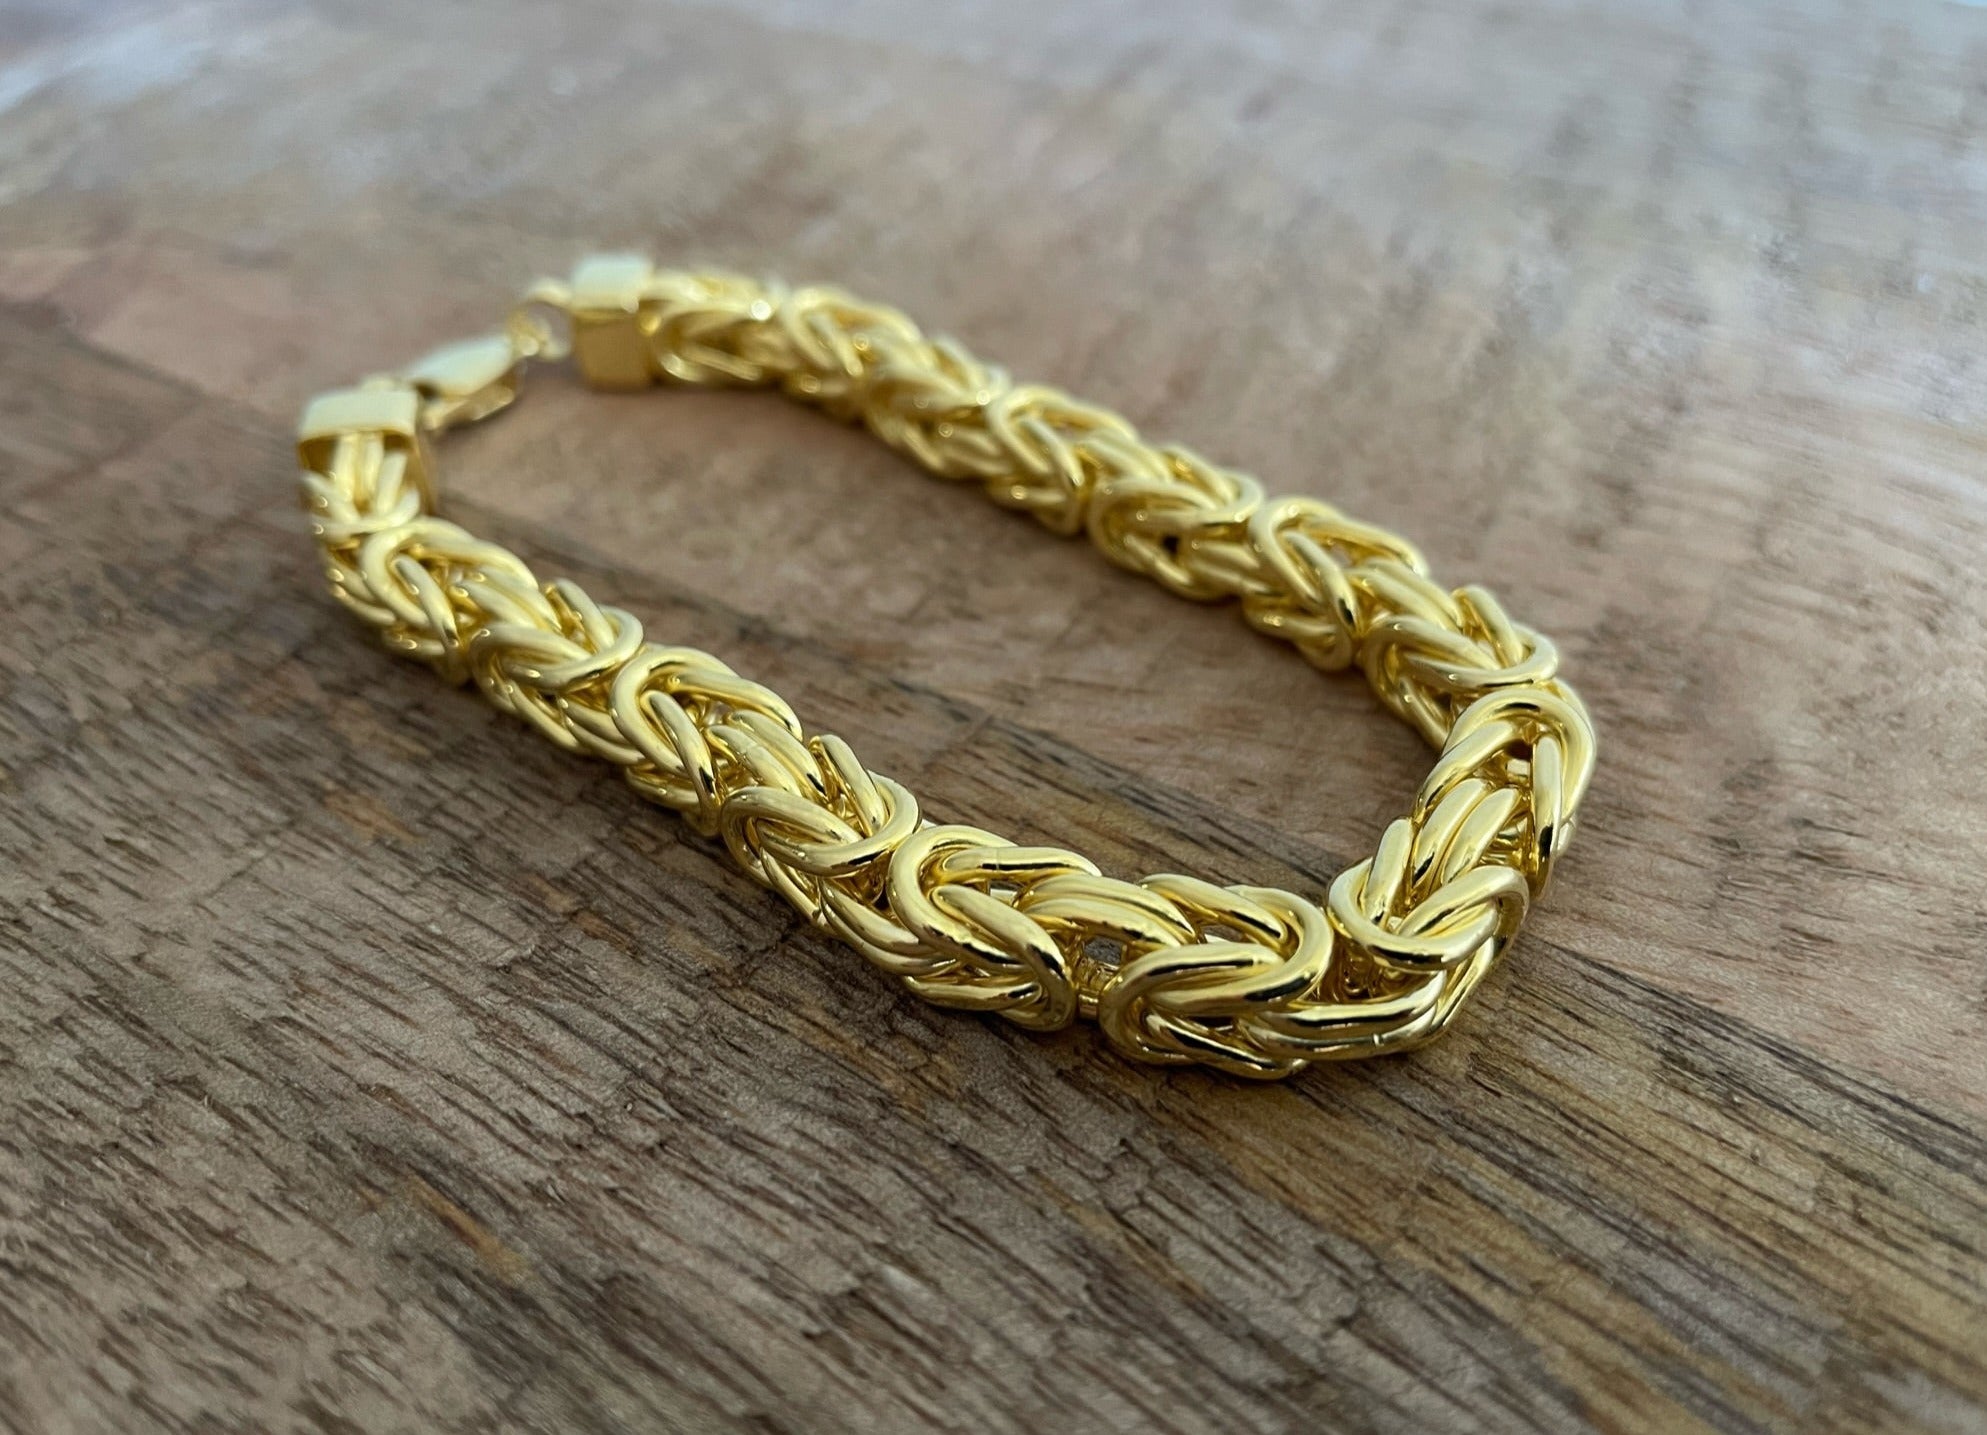 Gold Byzantine Bracelet - 7mm